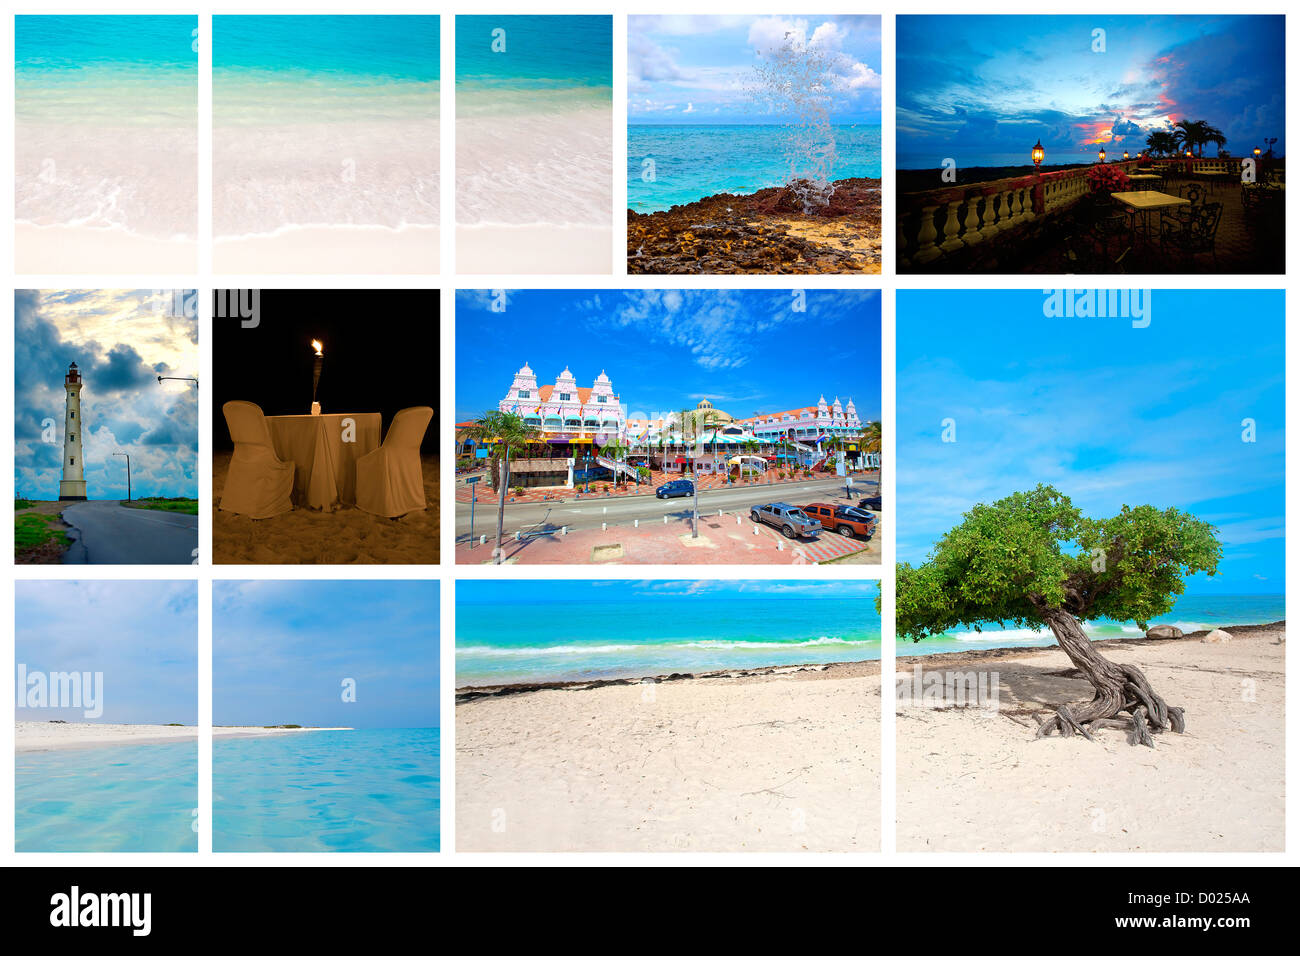 Collection de photos de la nature de l'île des Caraïbes Aruba Banque D'Images